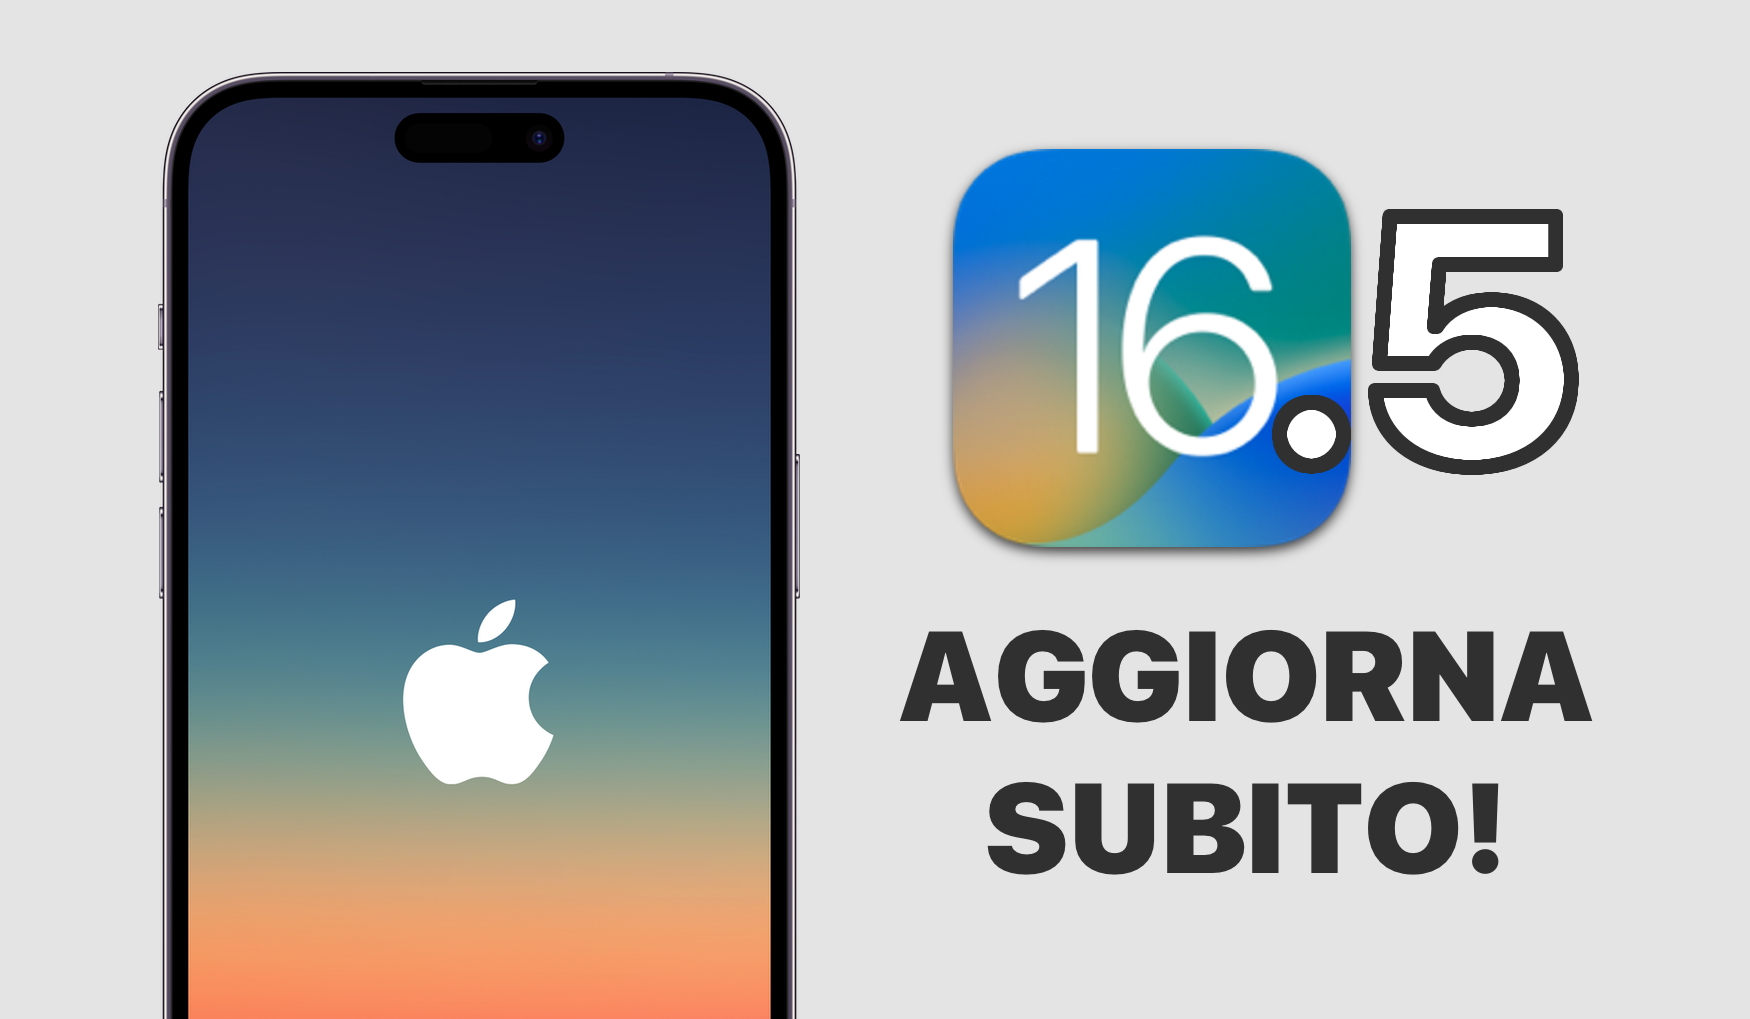 iOS 16.5 Aggiorna Subito